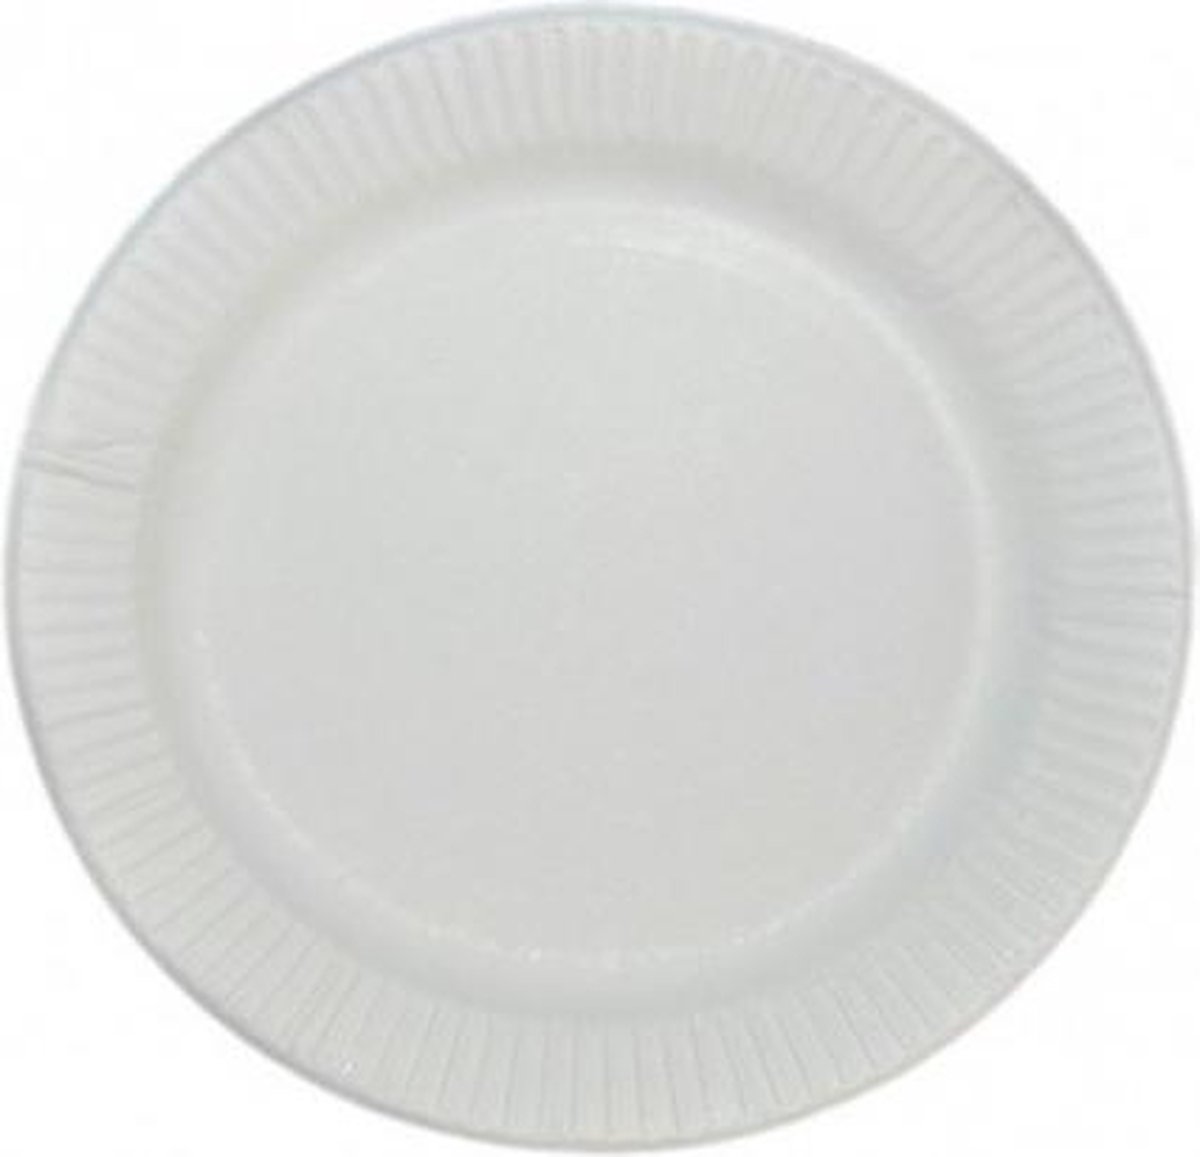 VOORDEELPAK: 5 Pakjes van Witte papieren borden, 15cm - verpakking van 100 borden